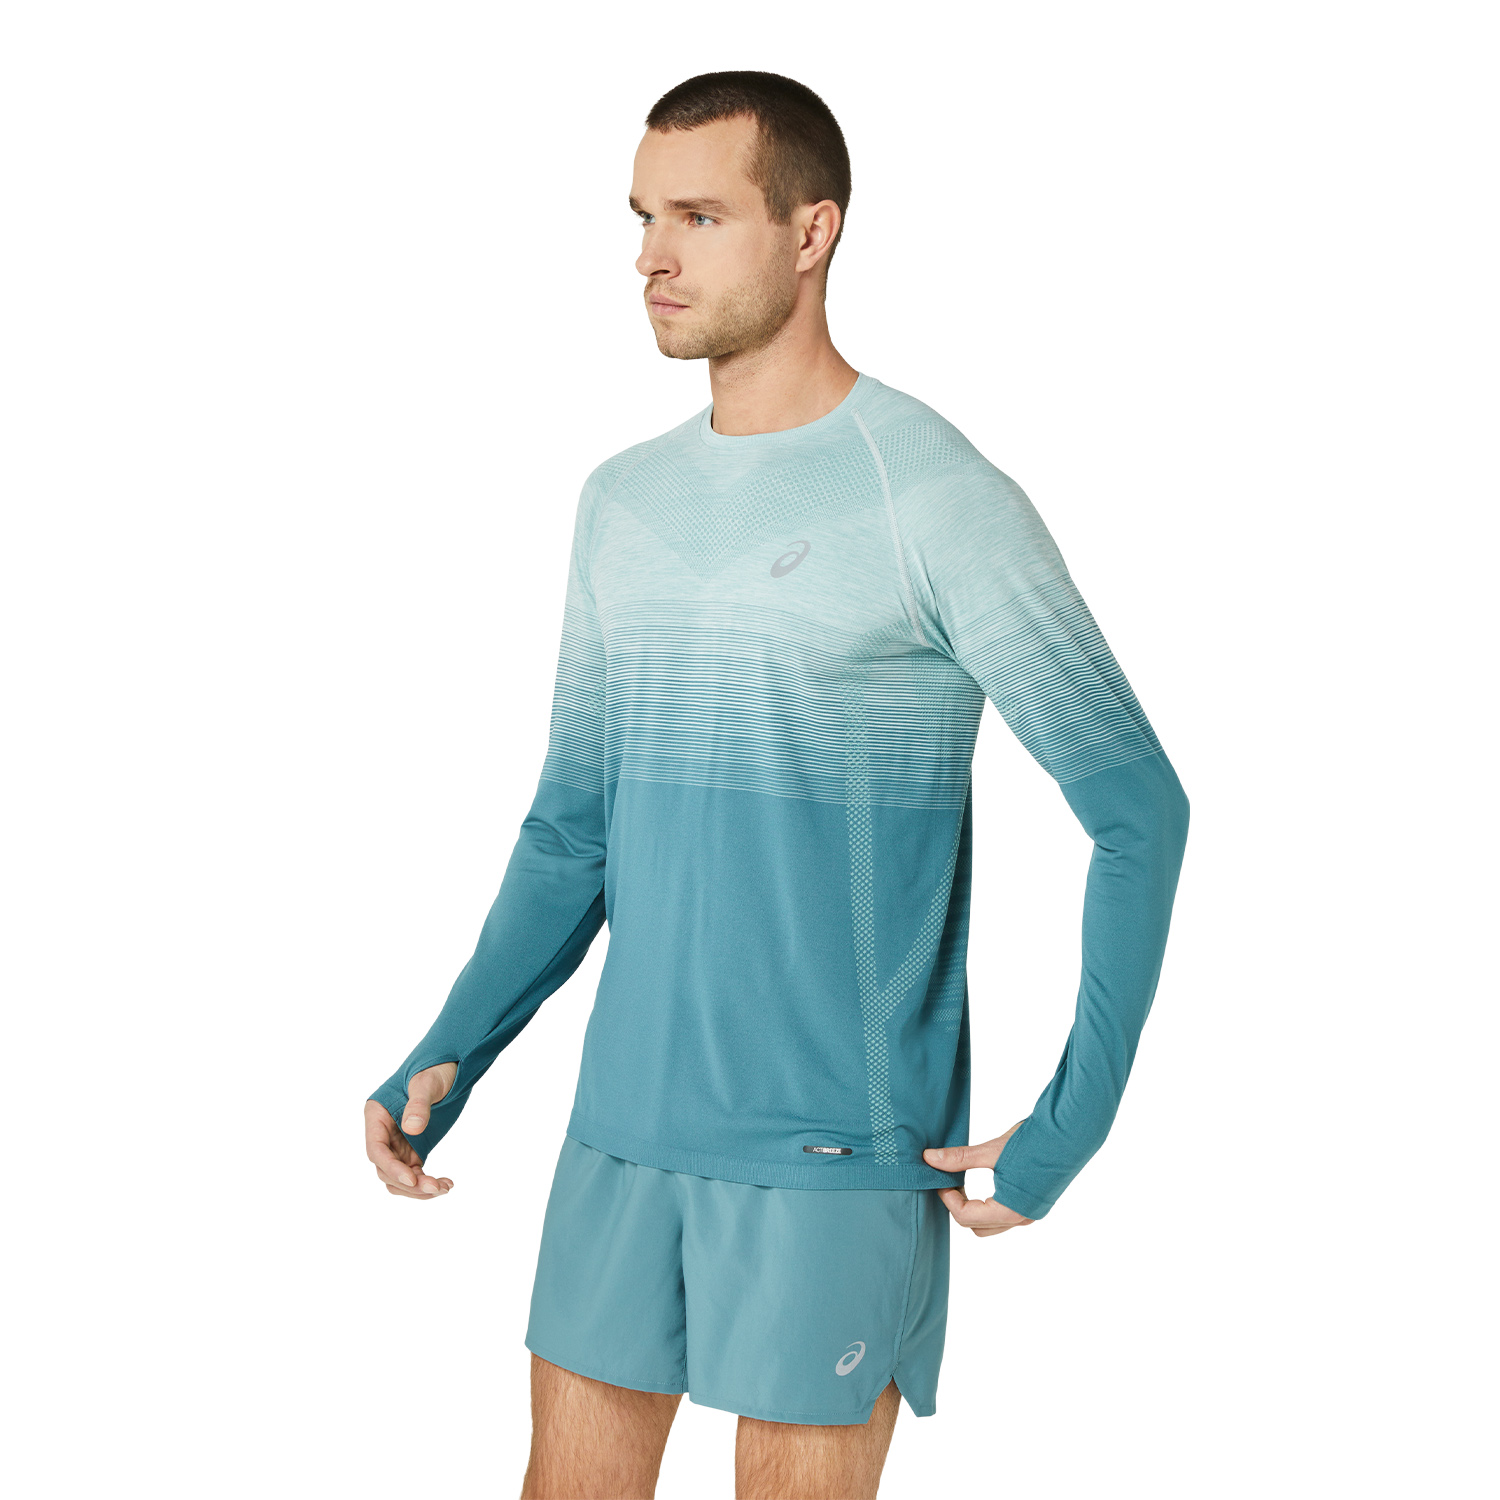 Asics Seamless Men's Running Shirt - Ocean Haze/Foggy Teal